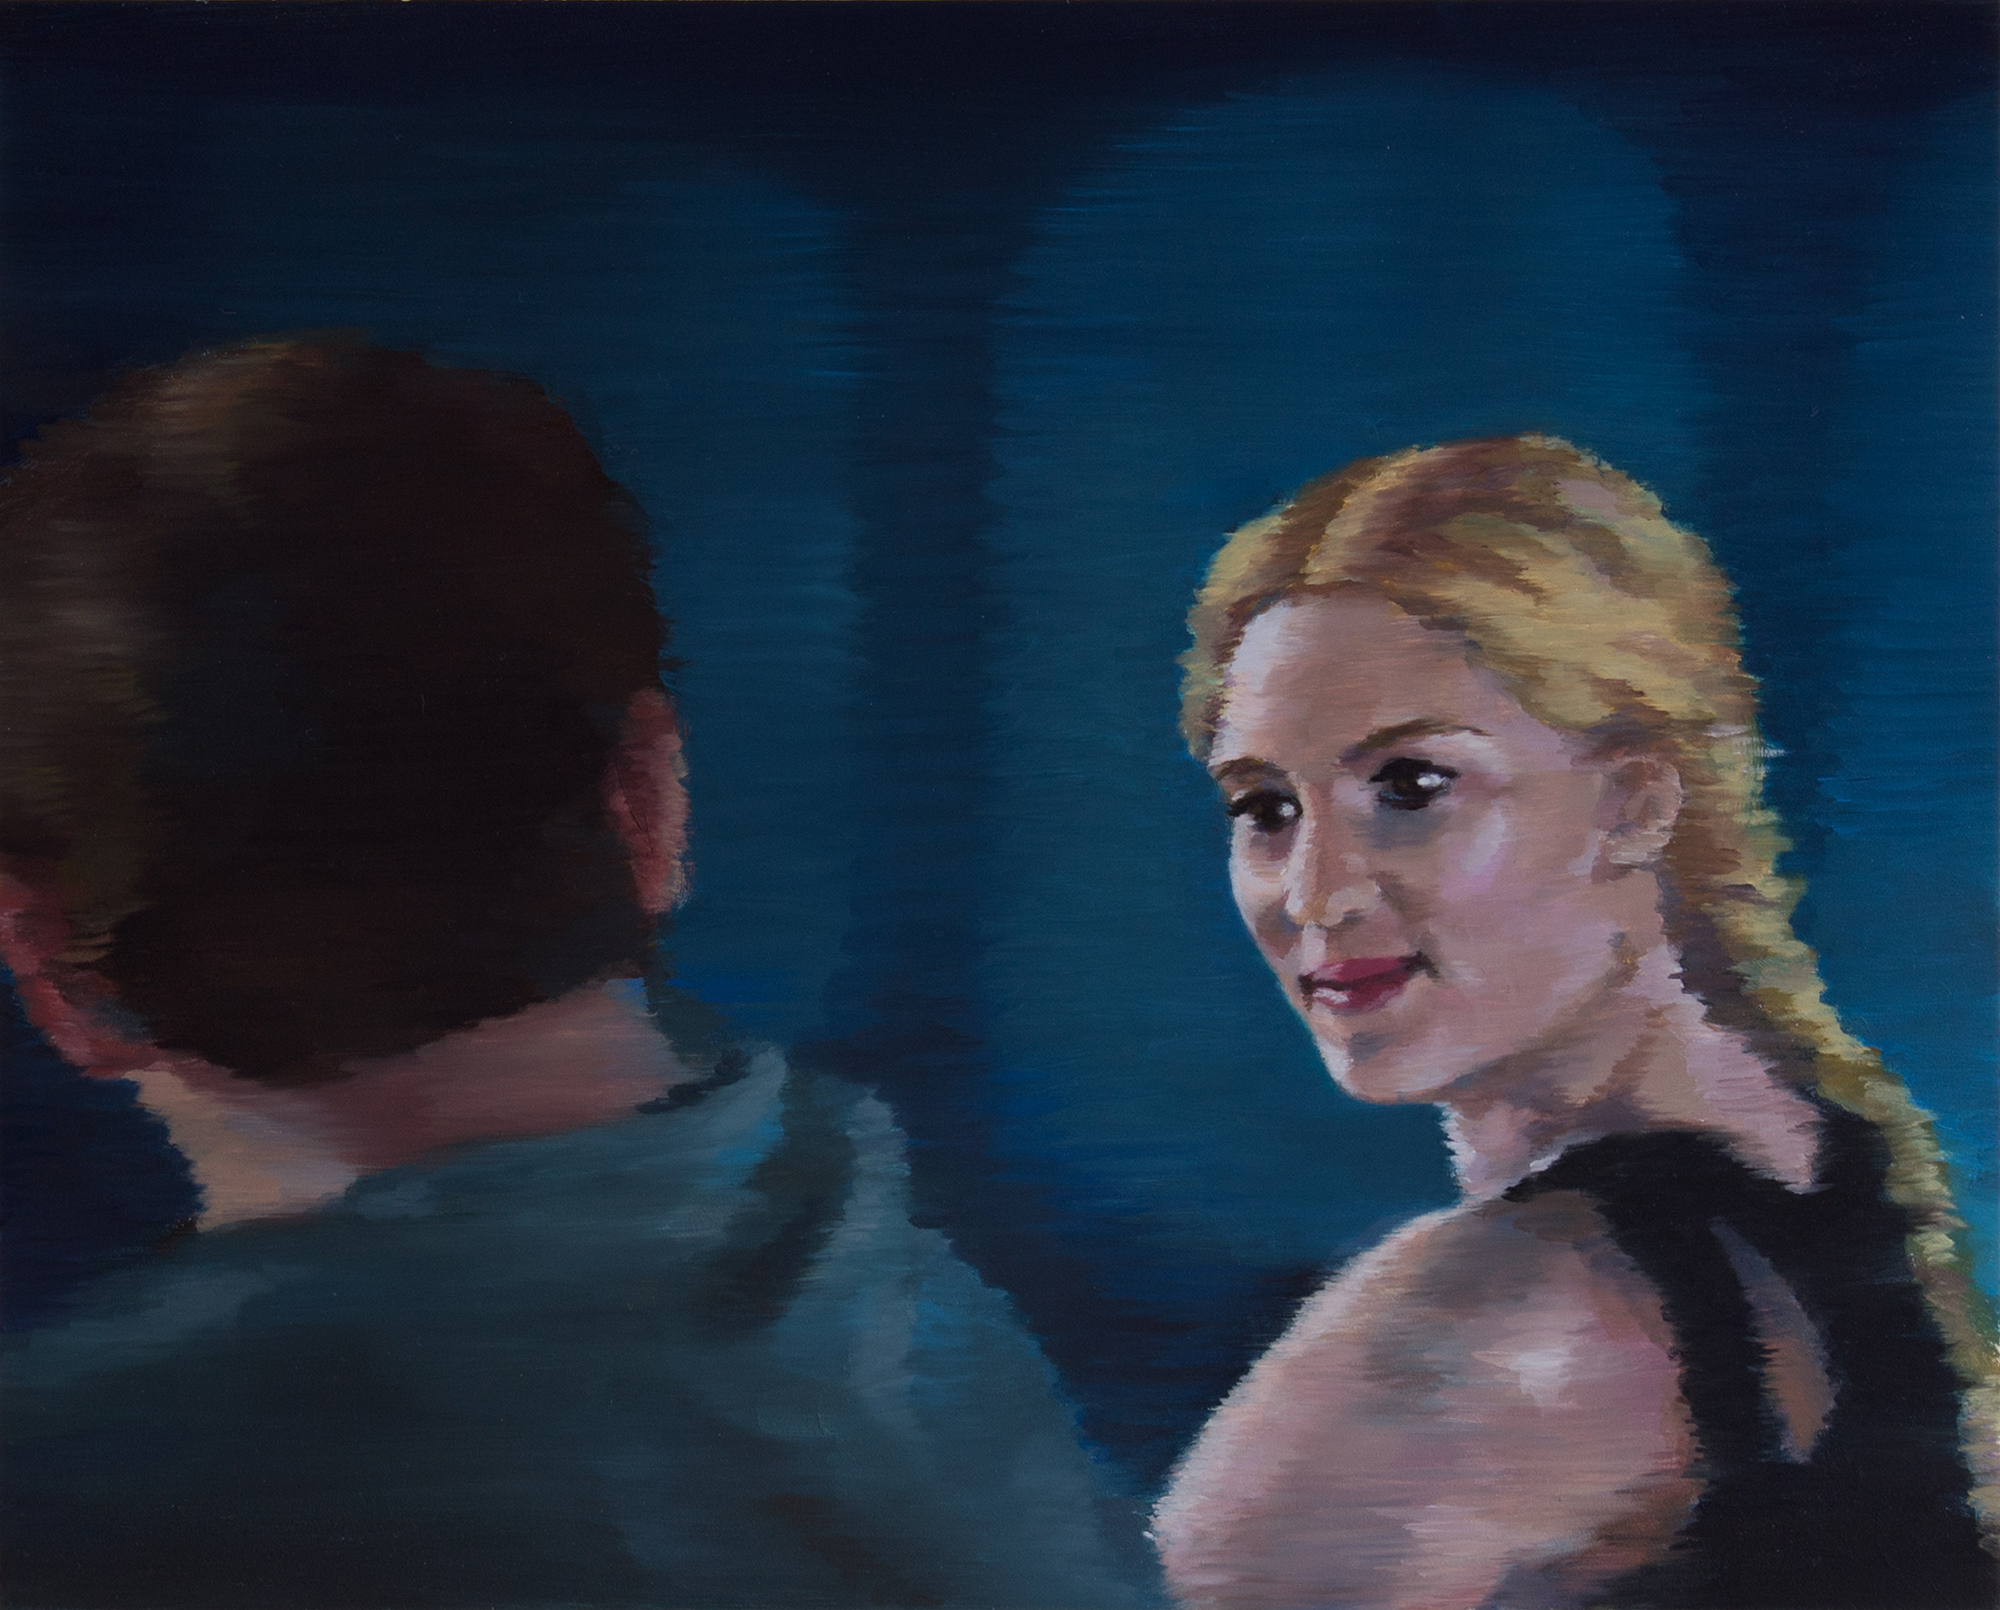   Seen&nbsp; (Scarlett Johansson)  oil on wood  8.25" x 10.25," 2014   